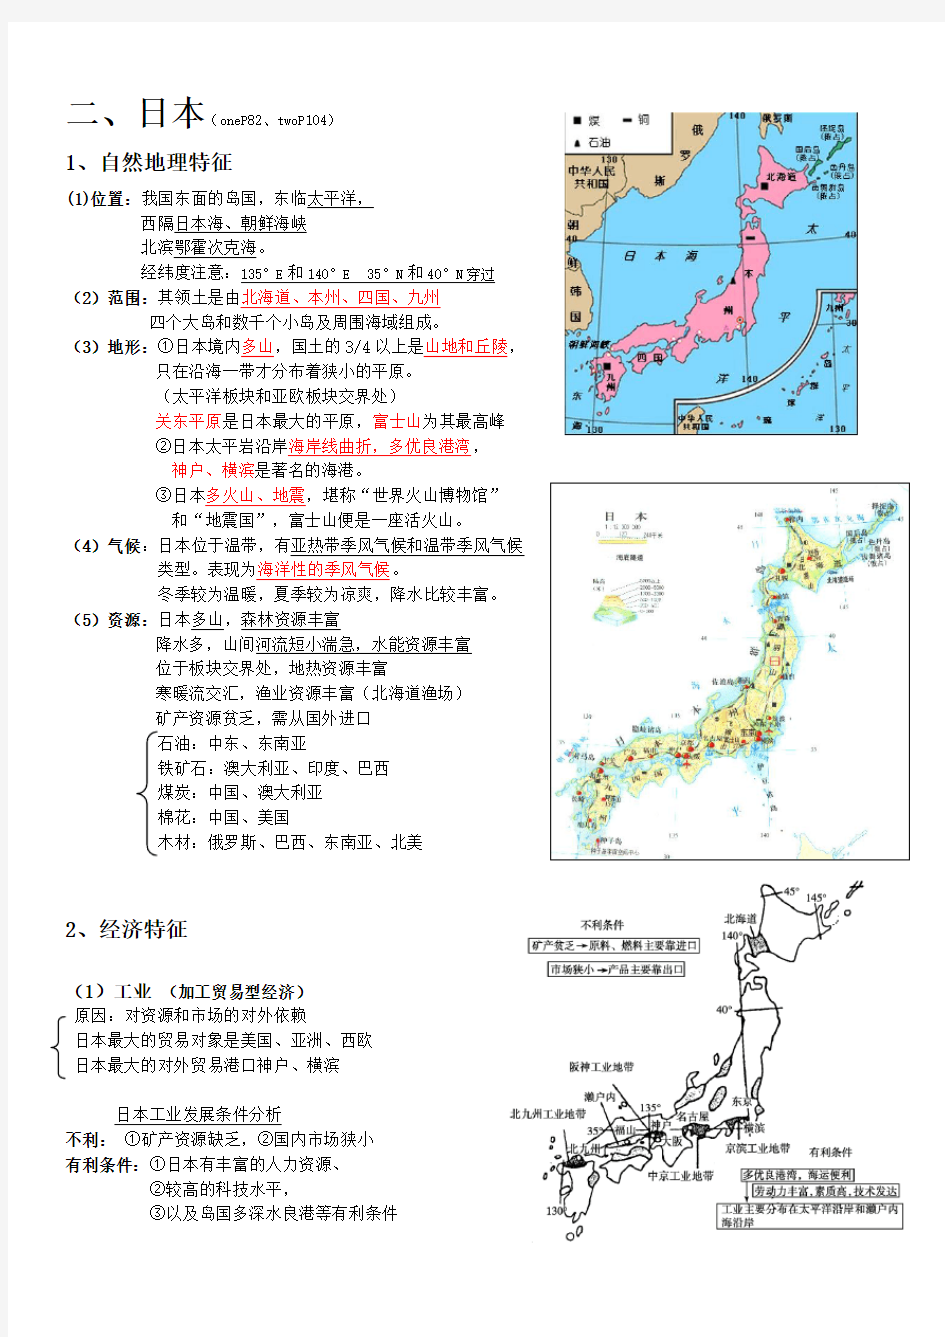 (完整版)日本区域地理知识总结精华